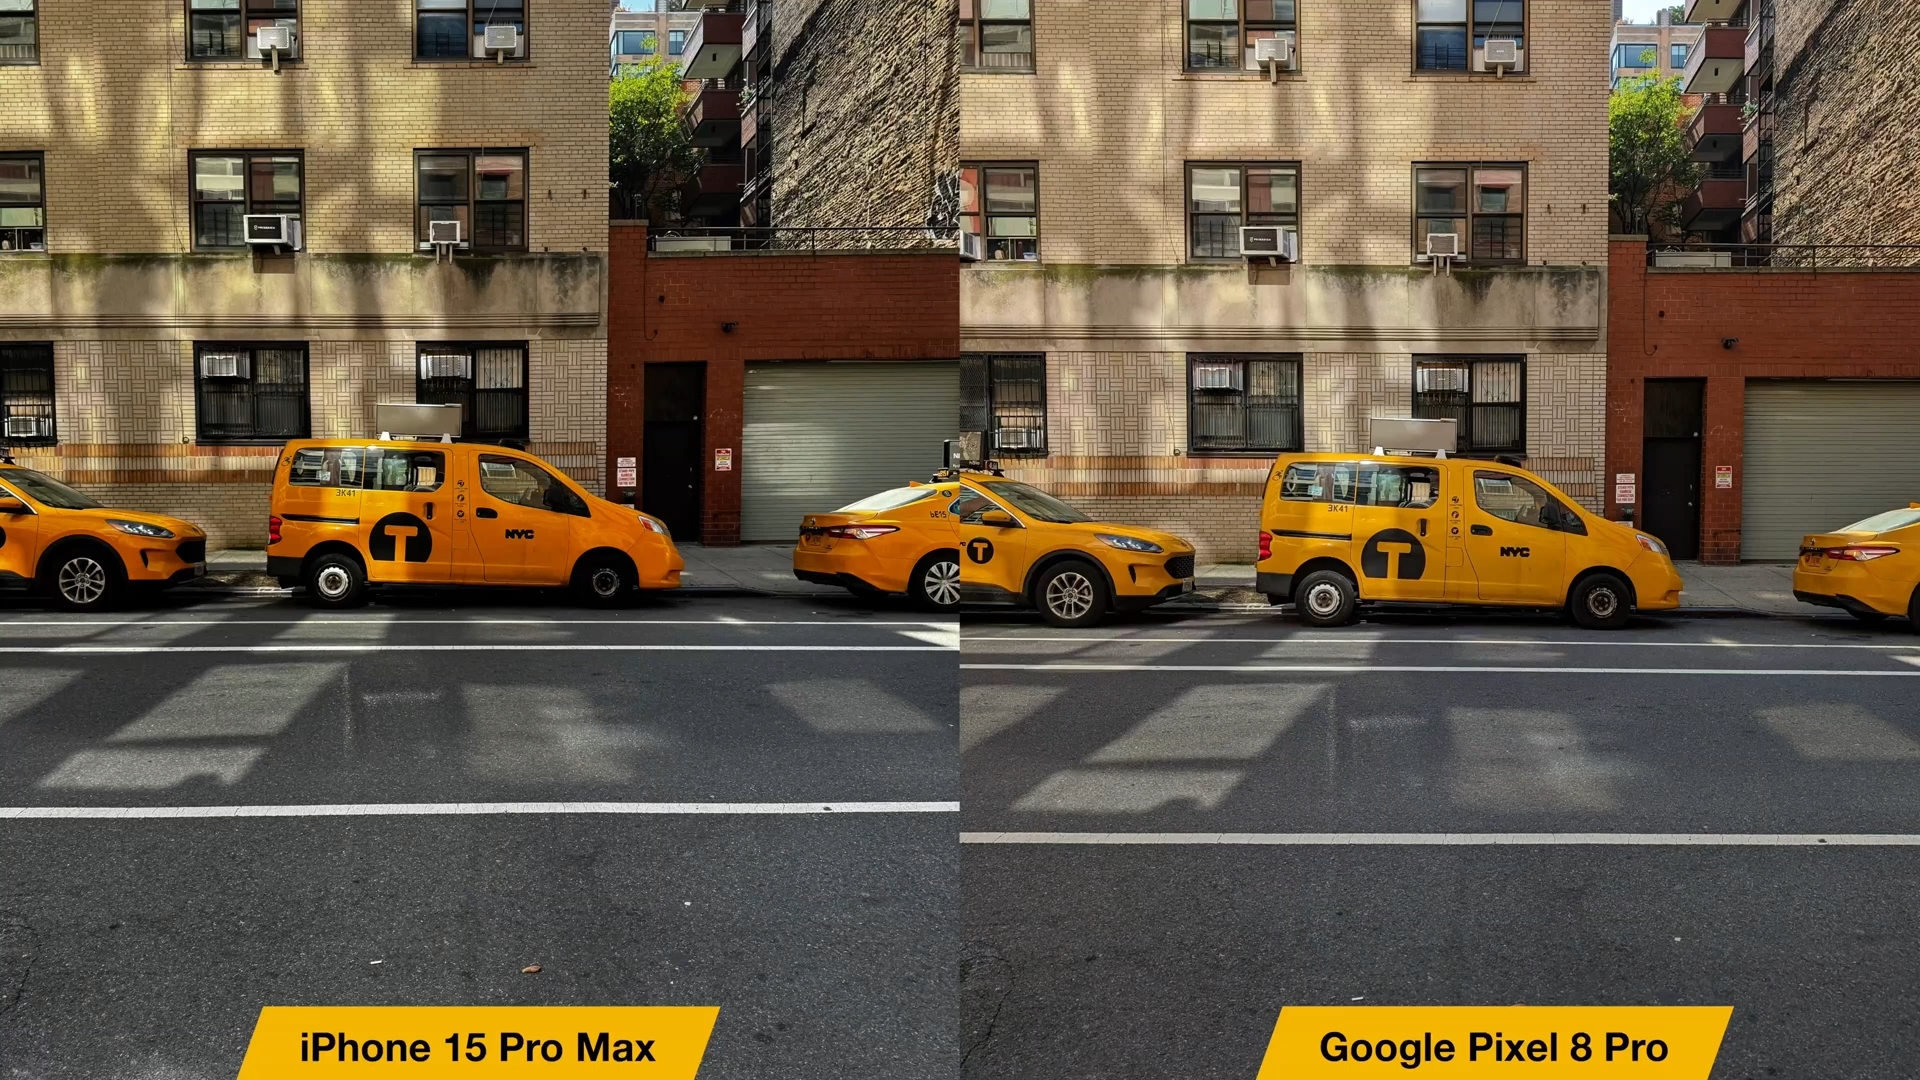 Van iPhoneIslam.com, vergelijking tussen de Google Pixel 8 Pro en de iPhone 15 Pro Max